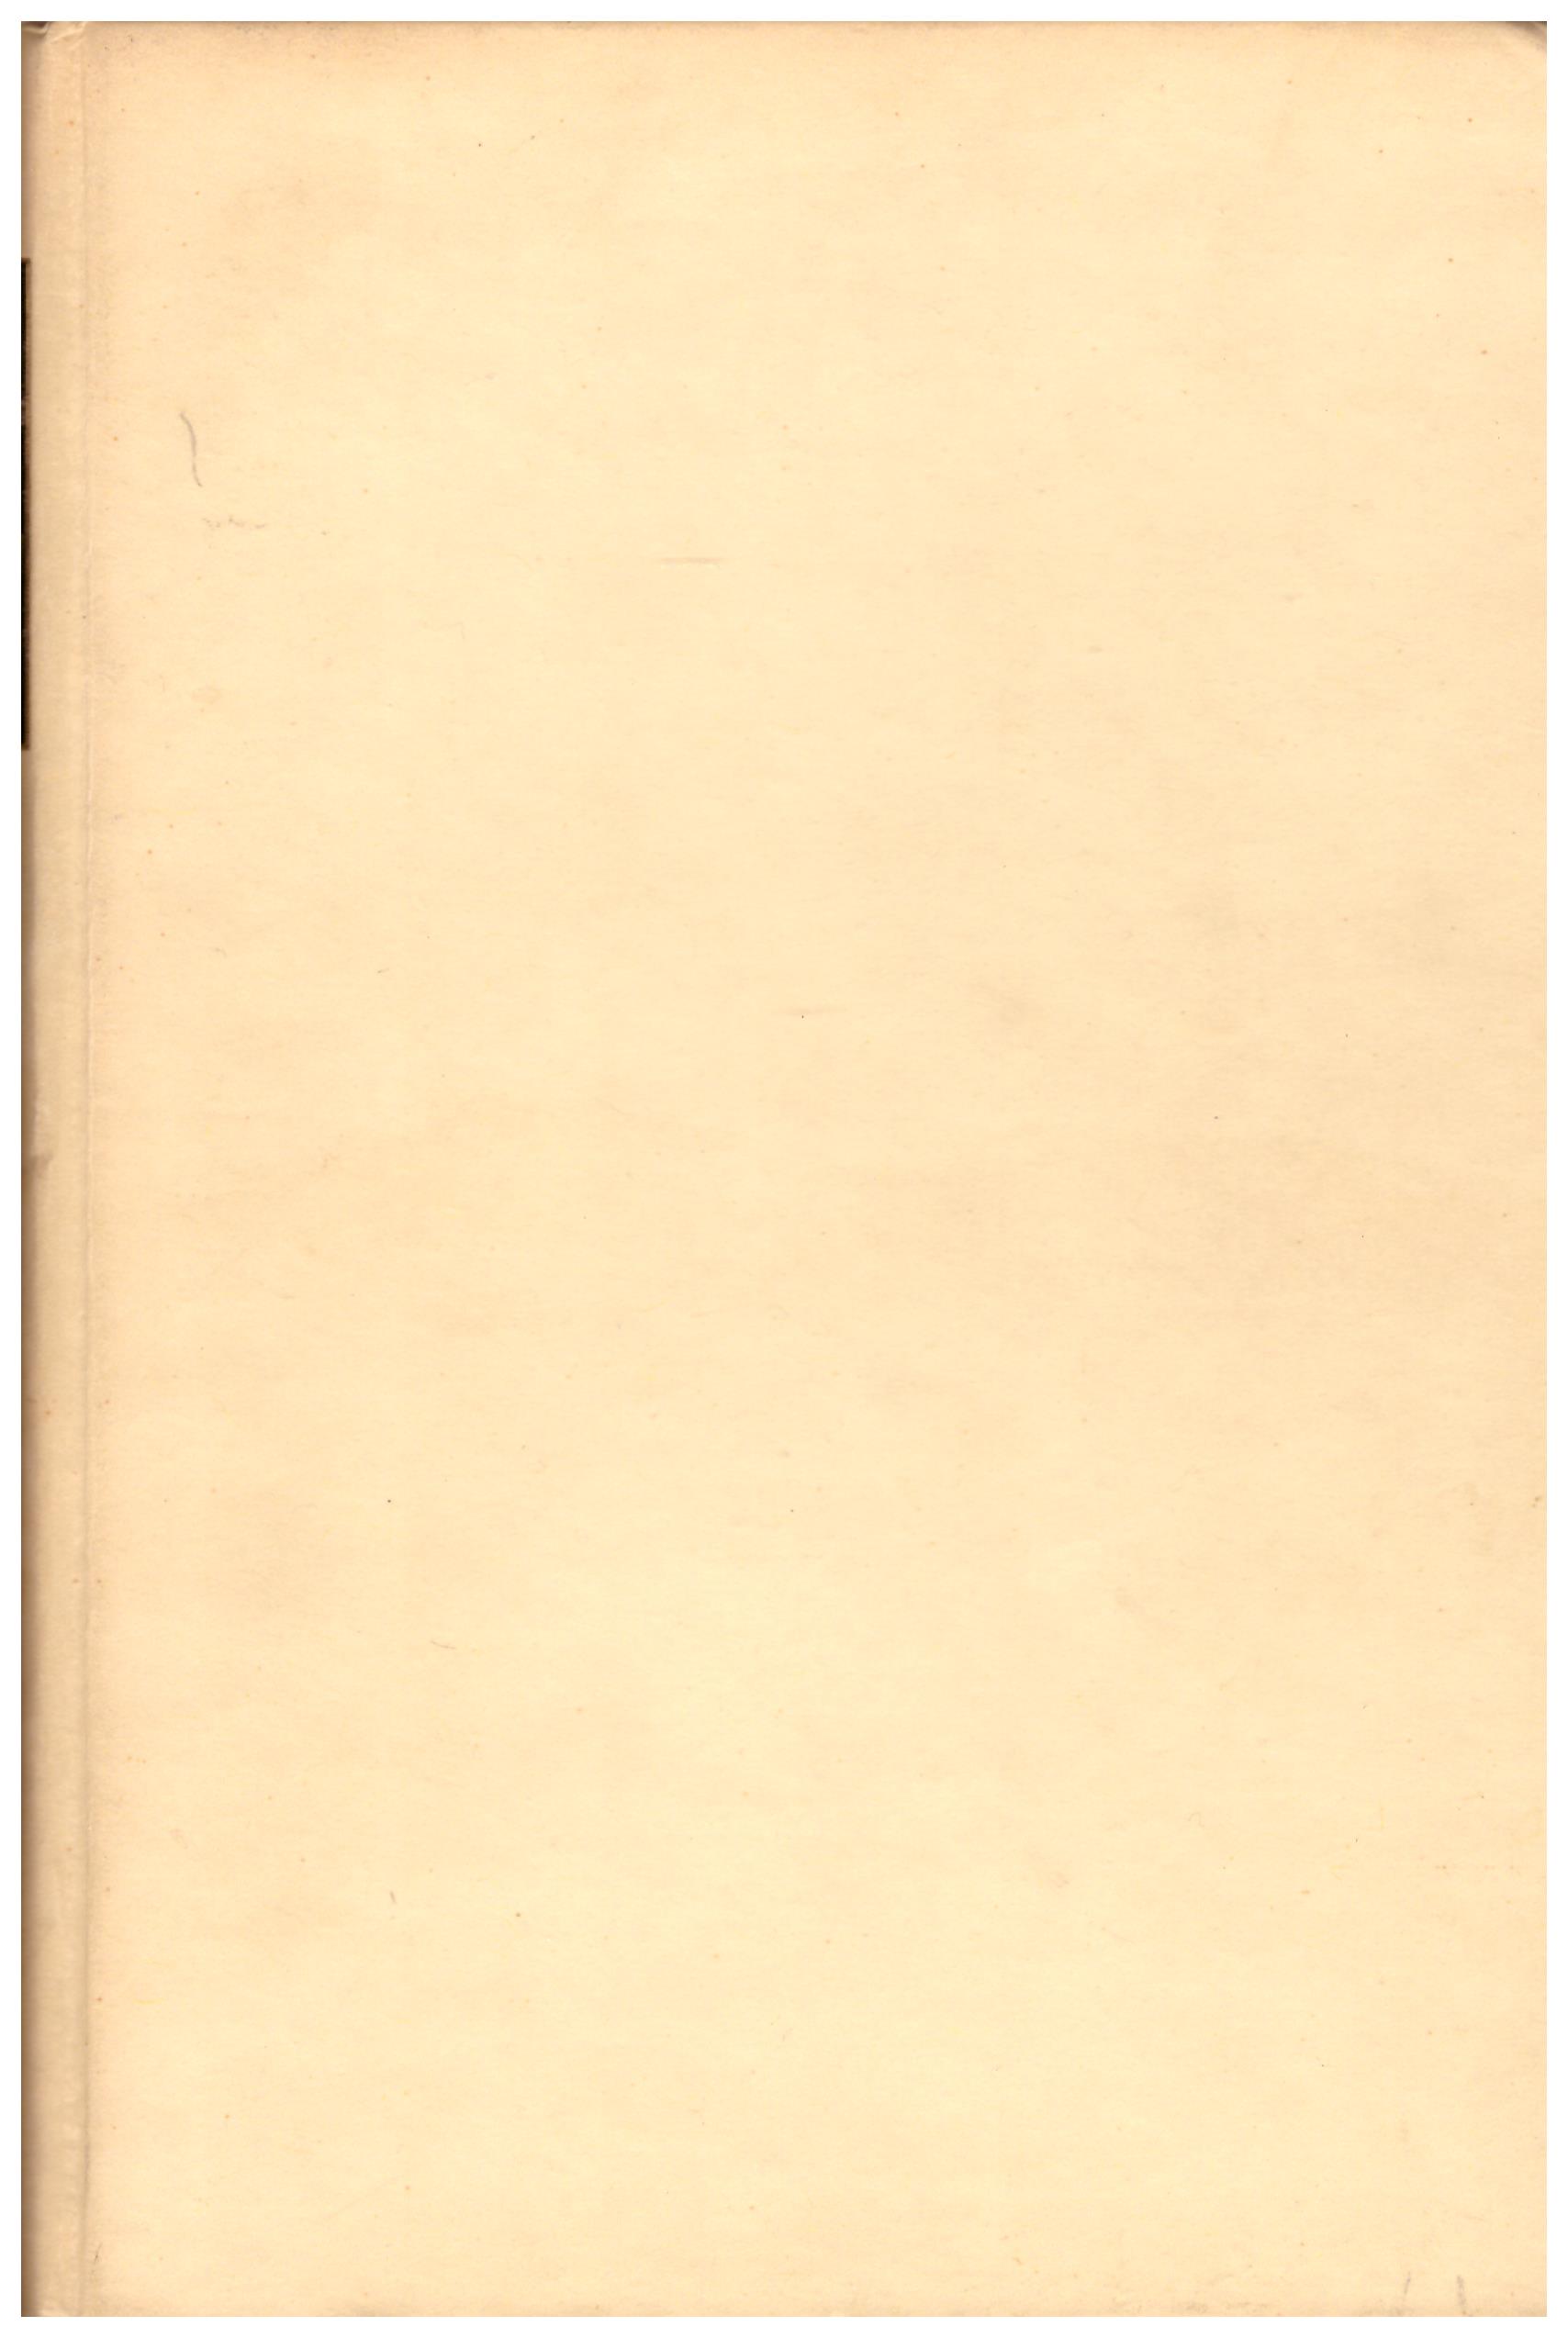 Titolo: Noi nudi, rime morali e politiche  Autore : Giovanni Pandozy Editore: Corso Editore, Roma 1954